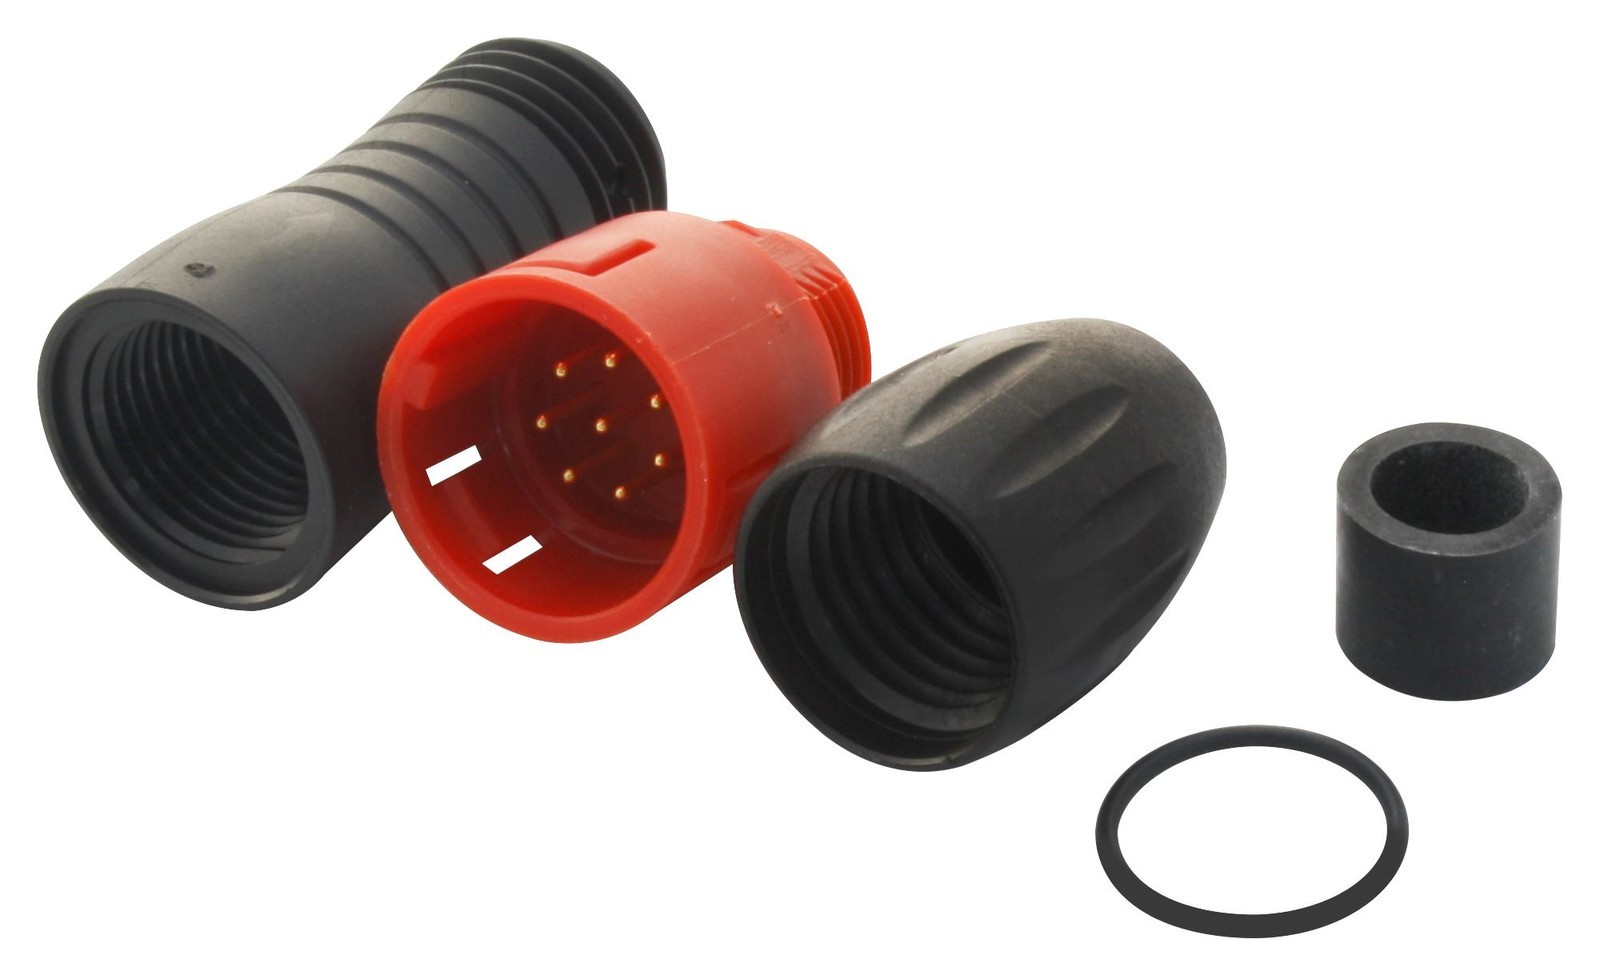 Binder 99-9125-50-08 Plug, Free, 4-6mm, Red, 8Way